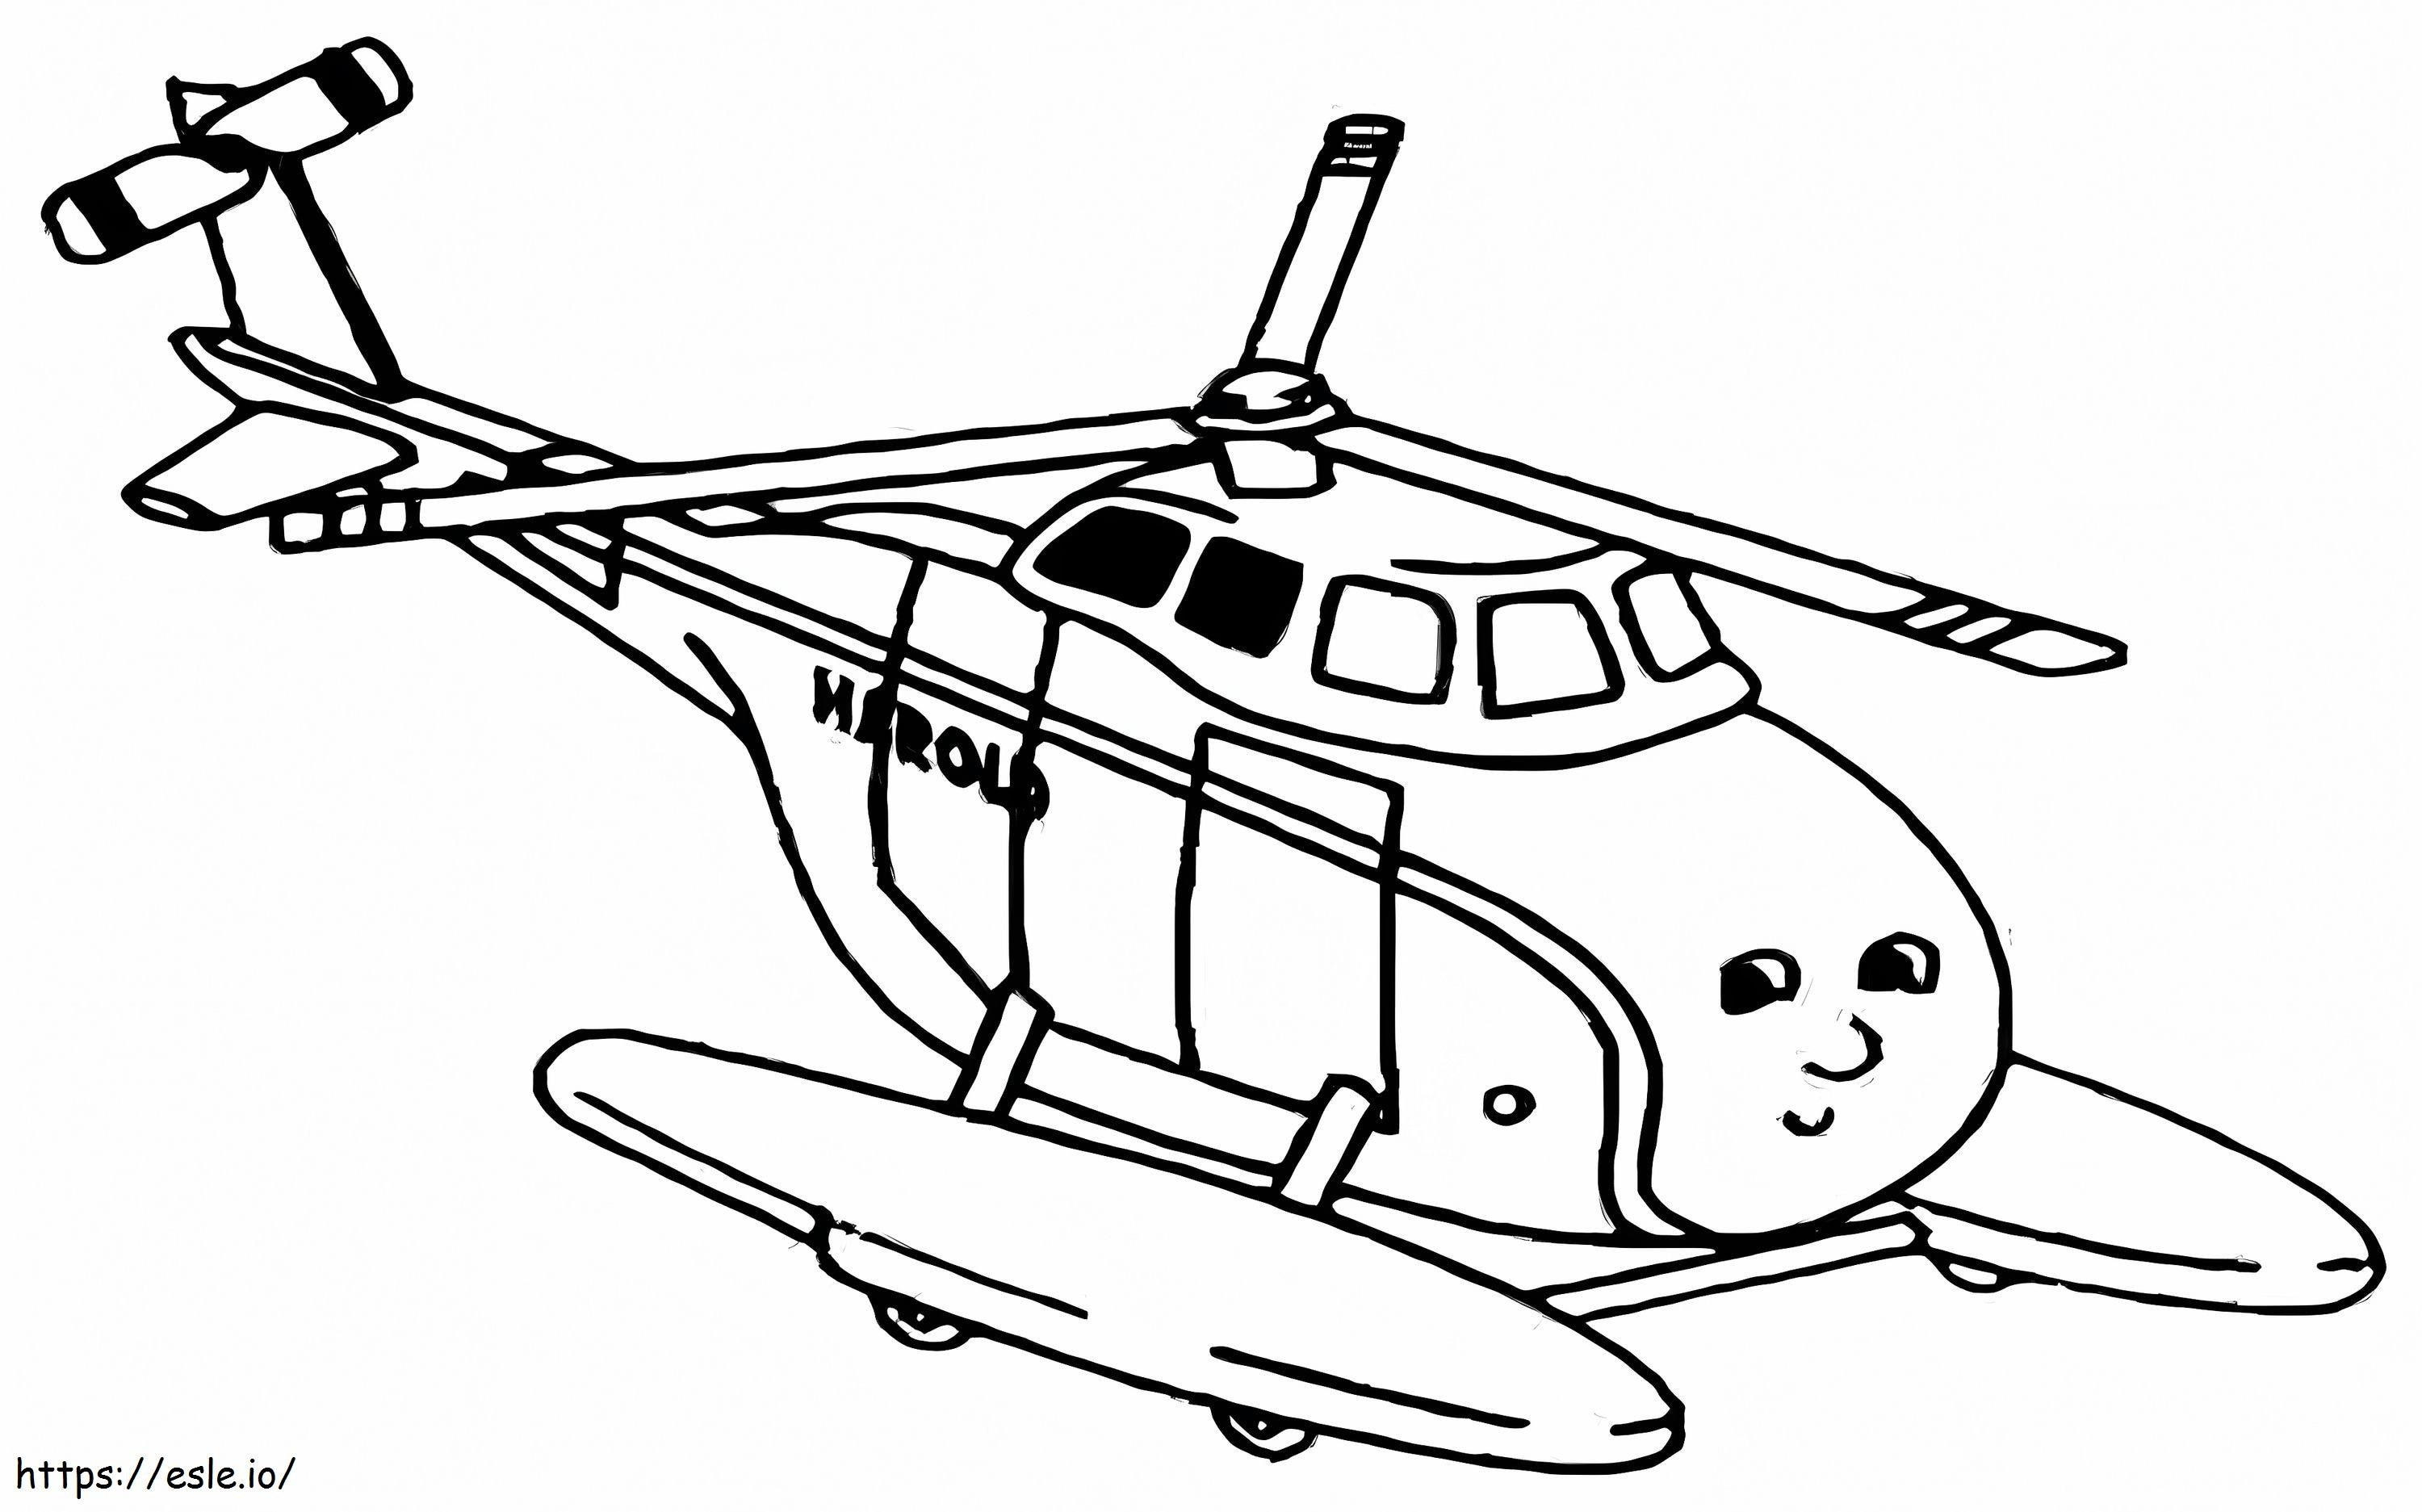 Elicopterul Harold de colorat